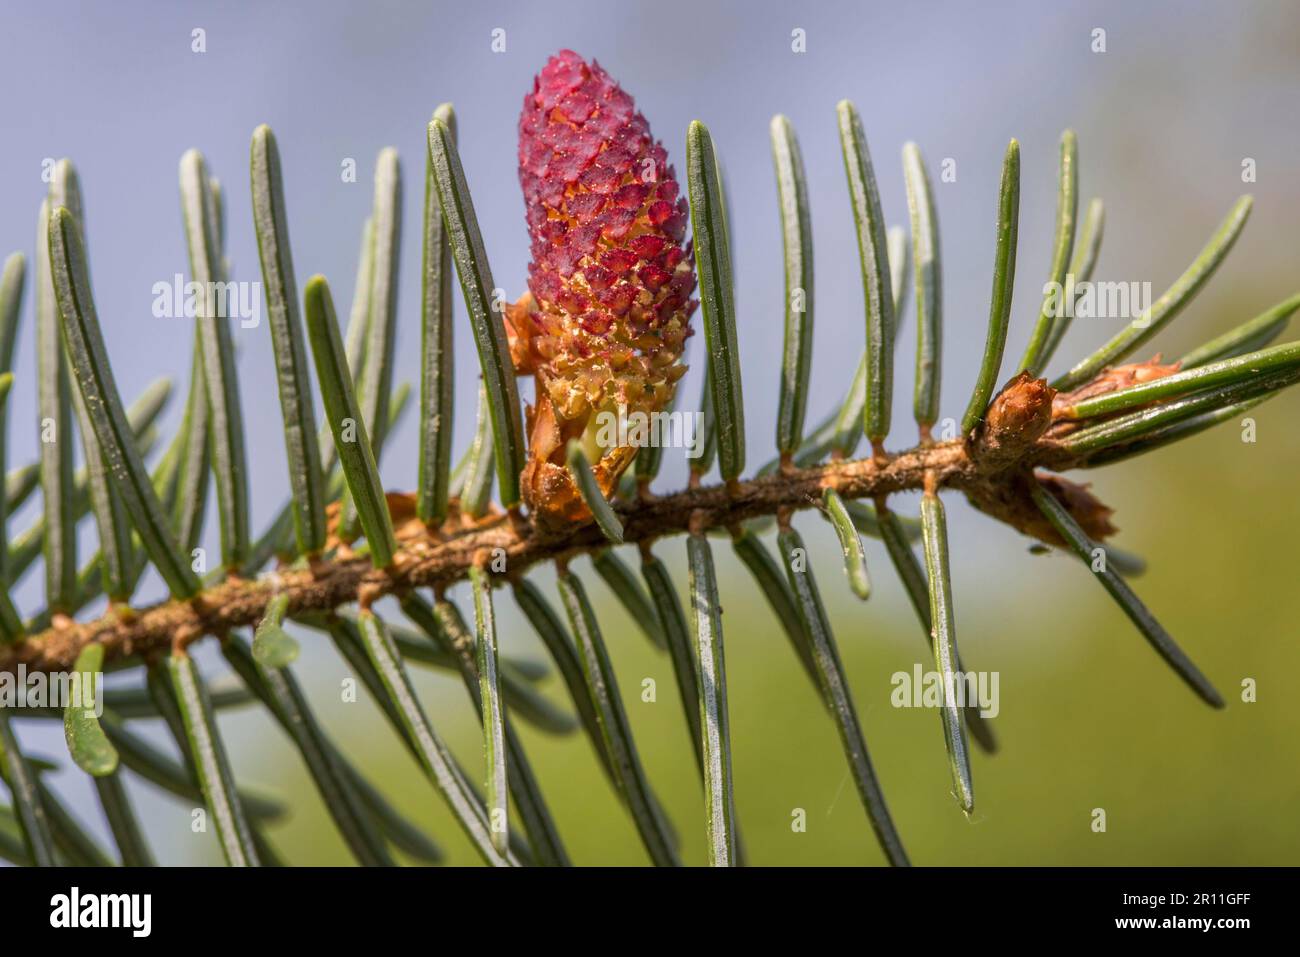 European silver fir (Abies alba) Stock Photo